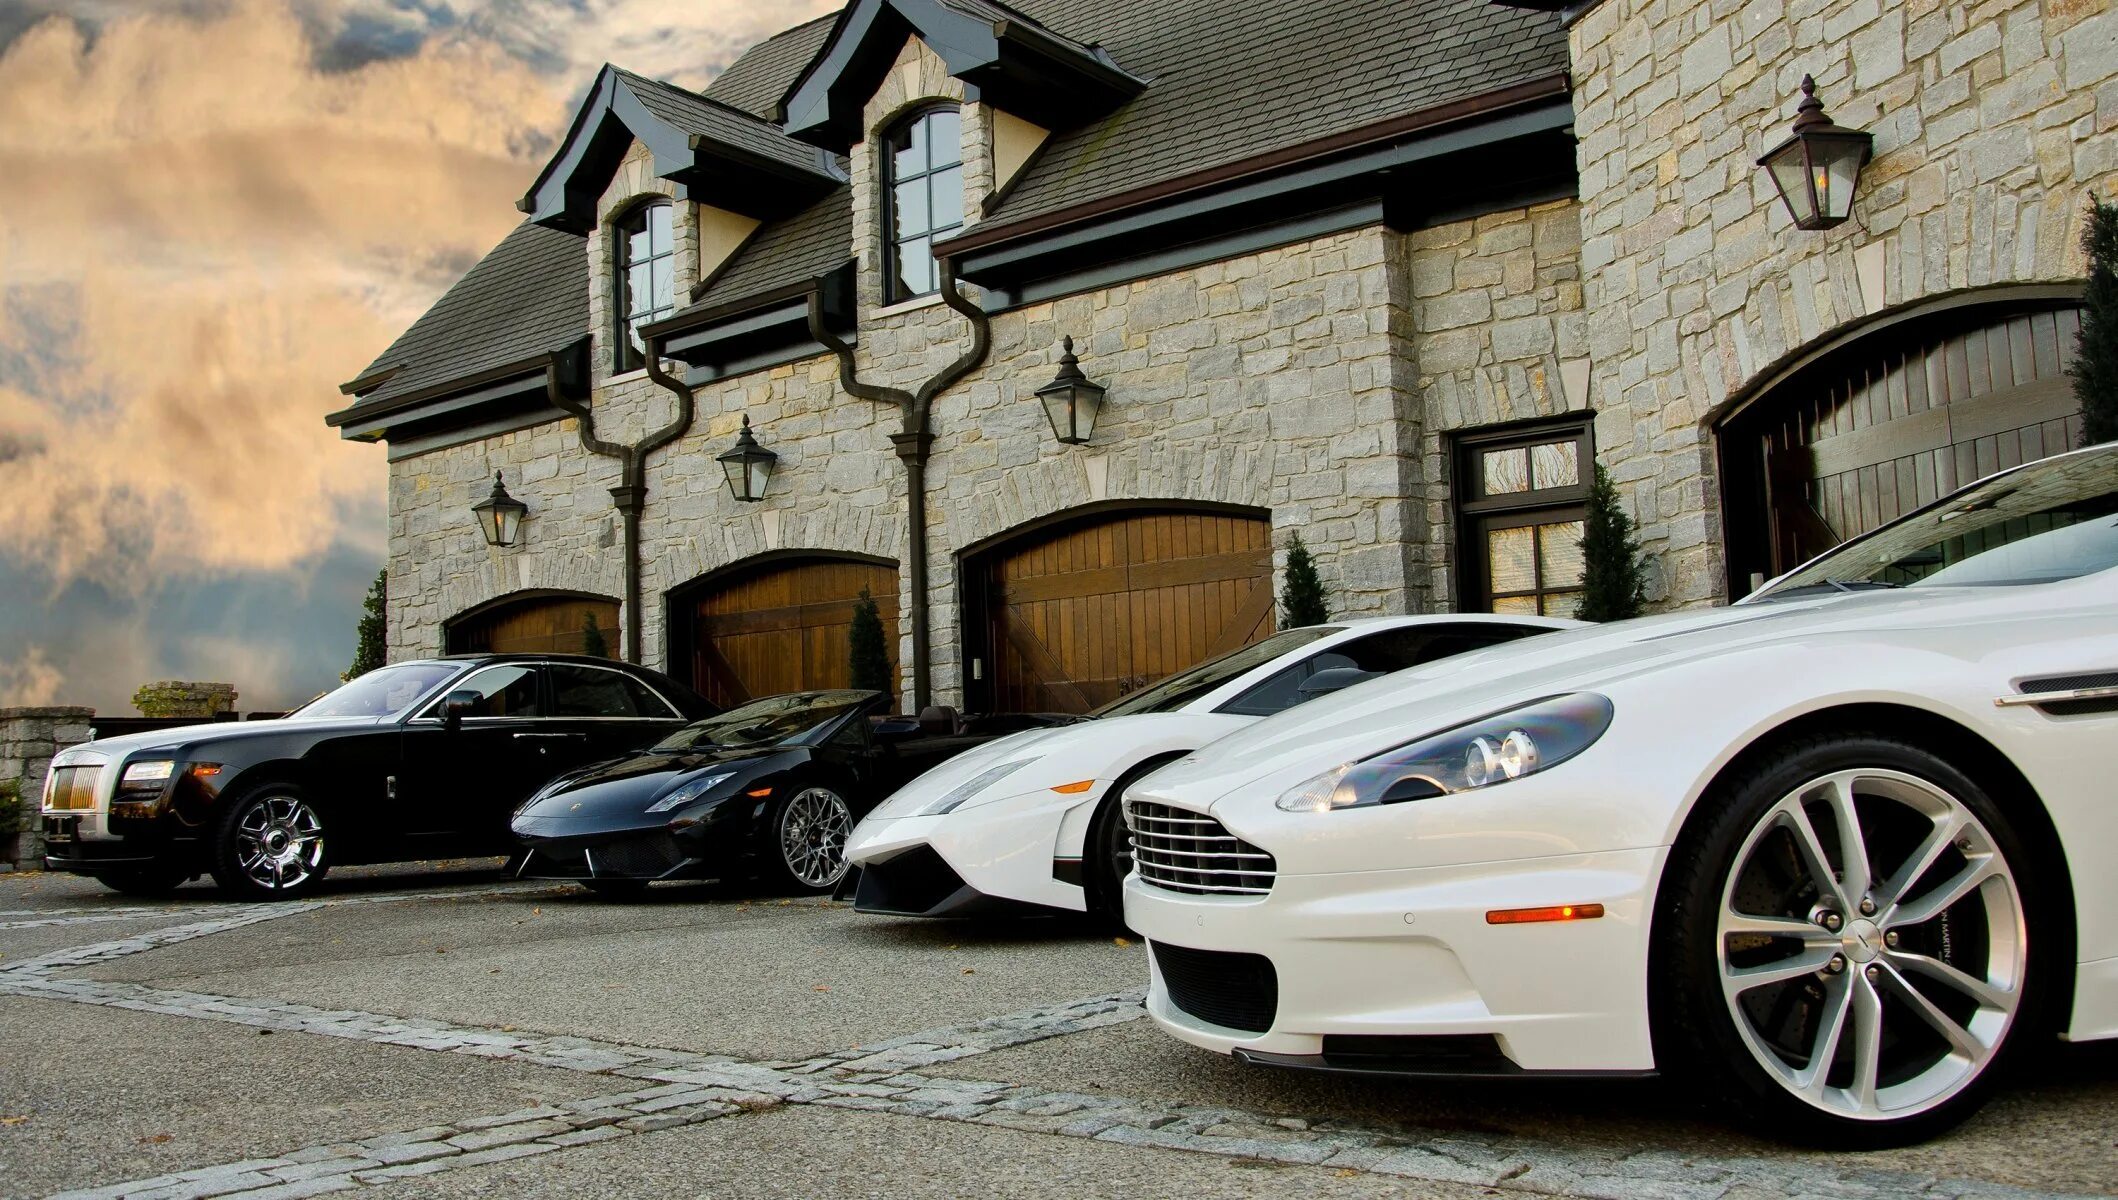 Aston Martin Lamborghini. Rich lot